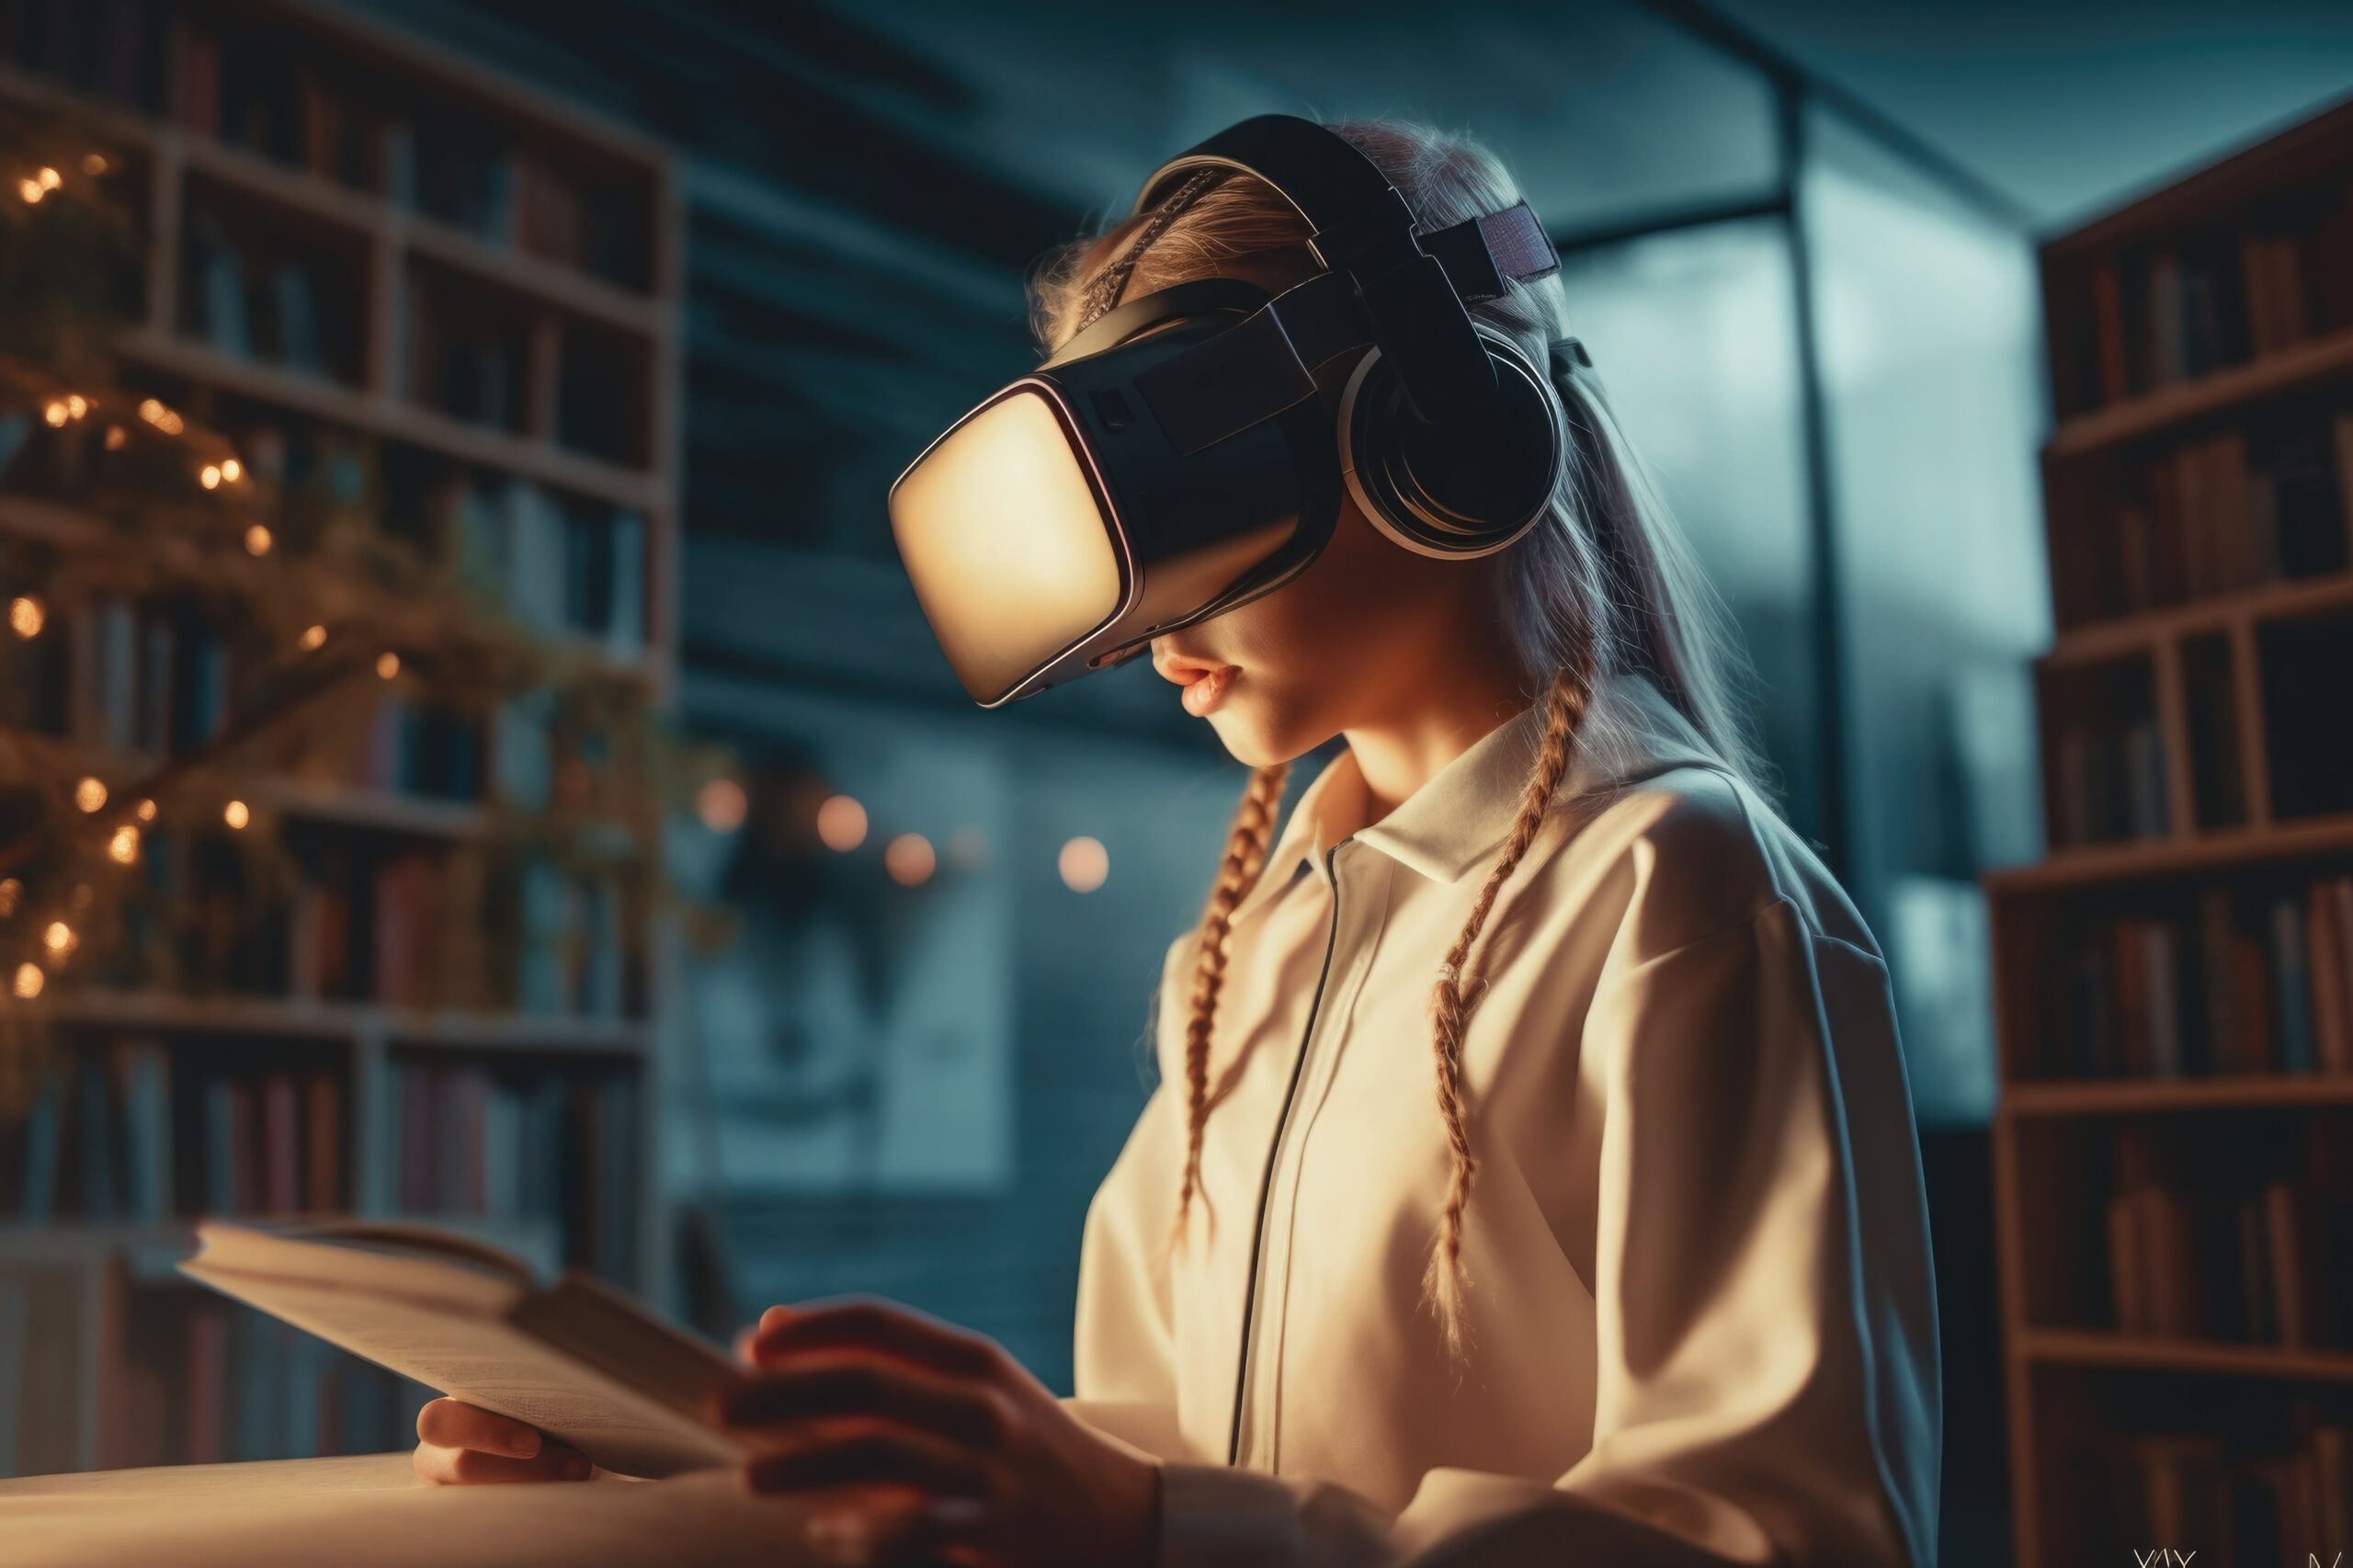 La realidad virtual en las bibliotecas puede atraer a usuarios más jóvenes